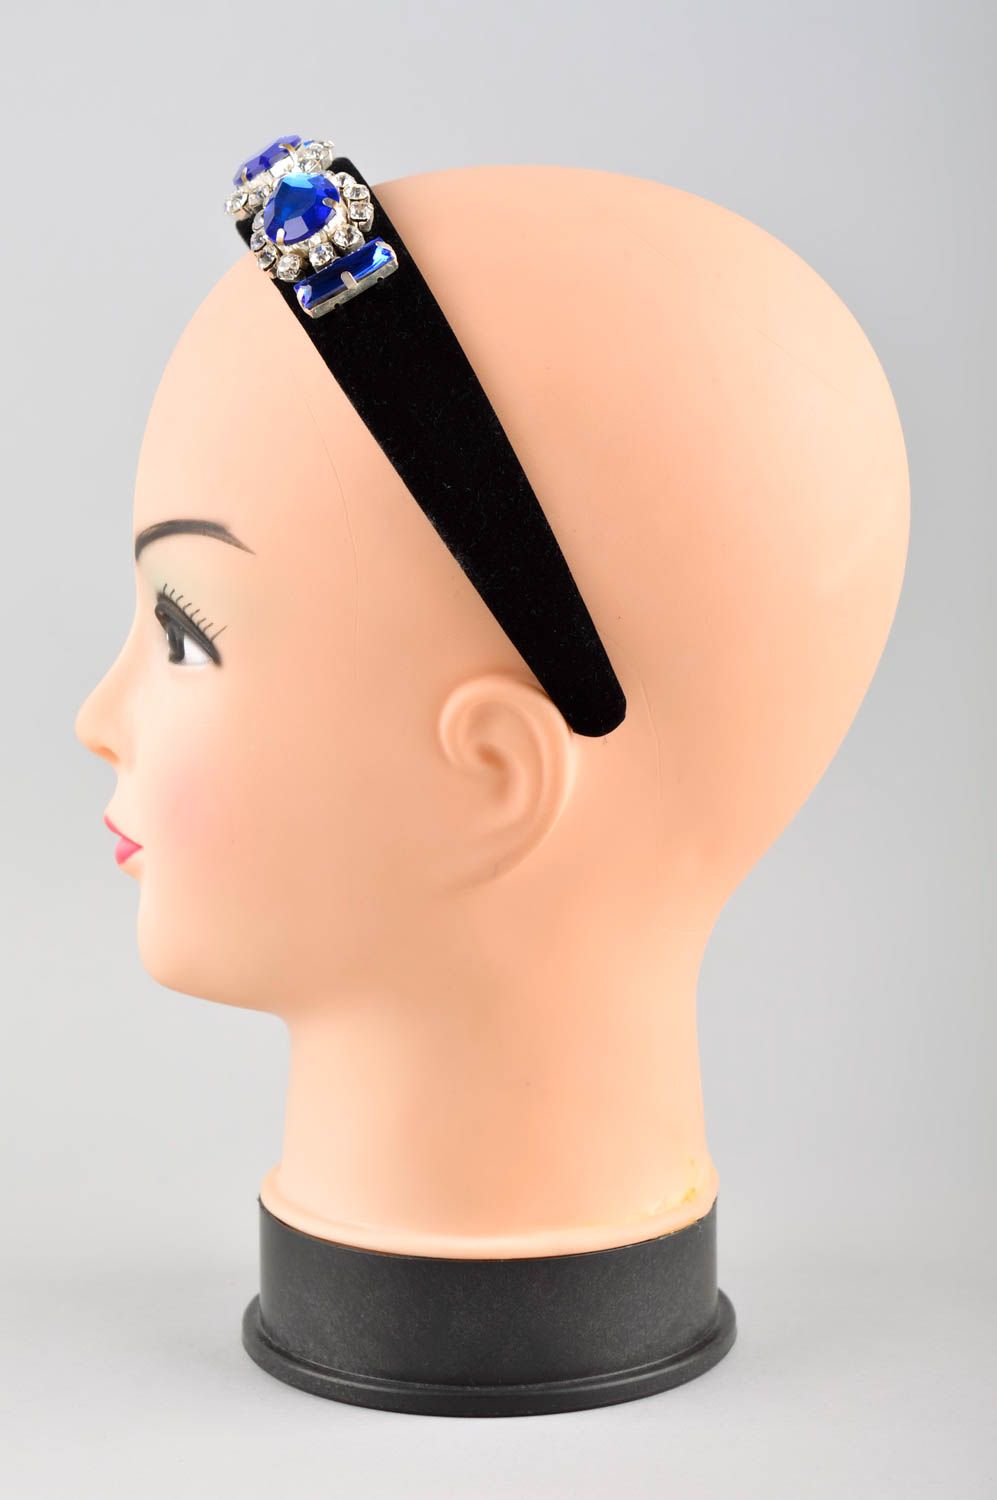 Аксессуар для волос хэнд мэйд обруч на голову черный женский аксессуар фото 2